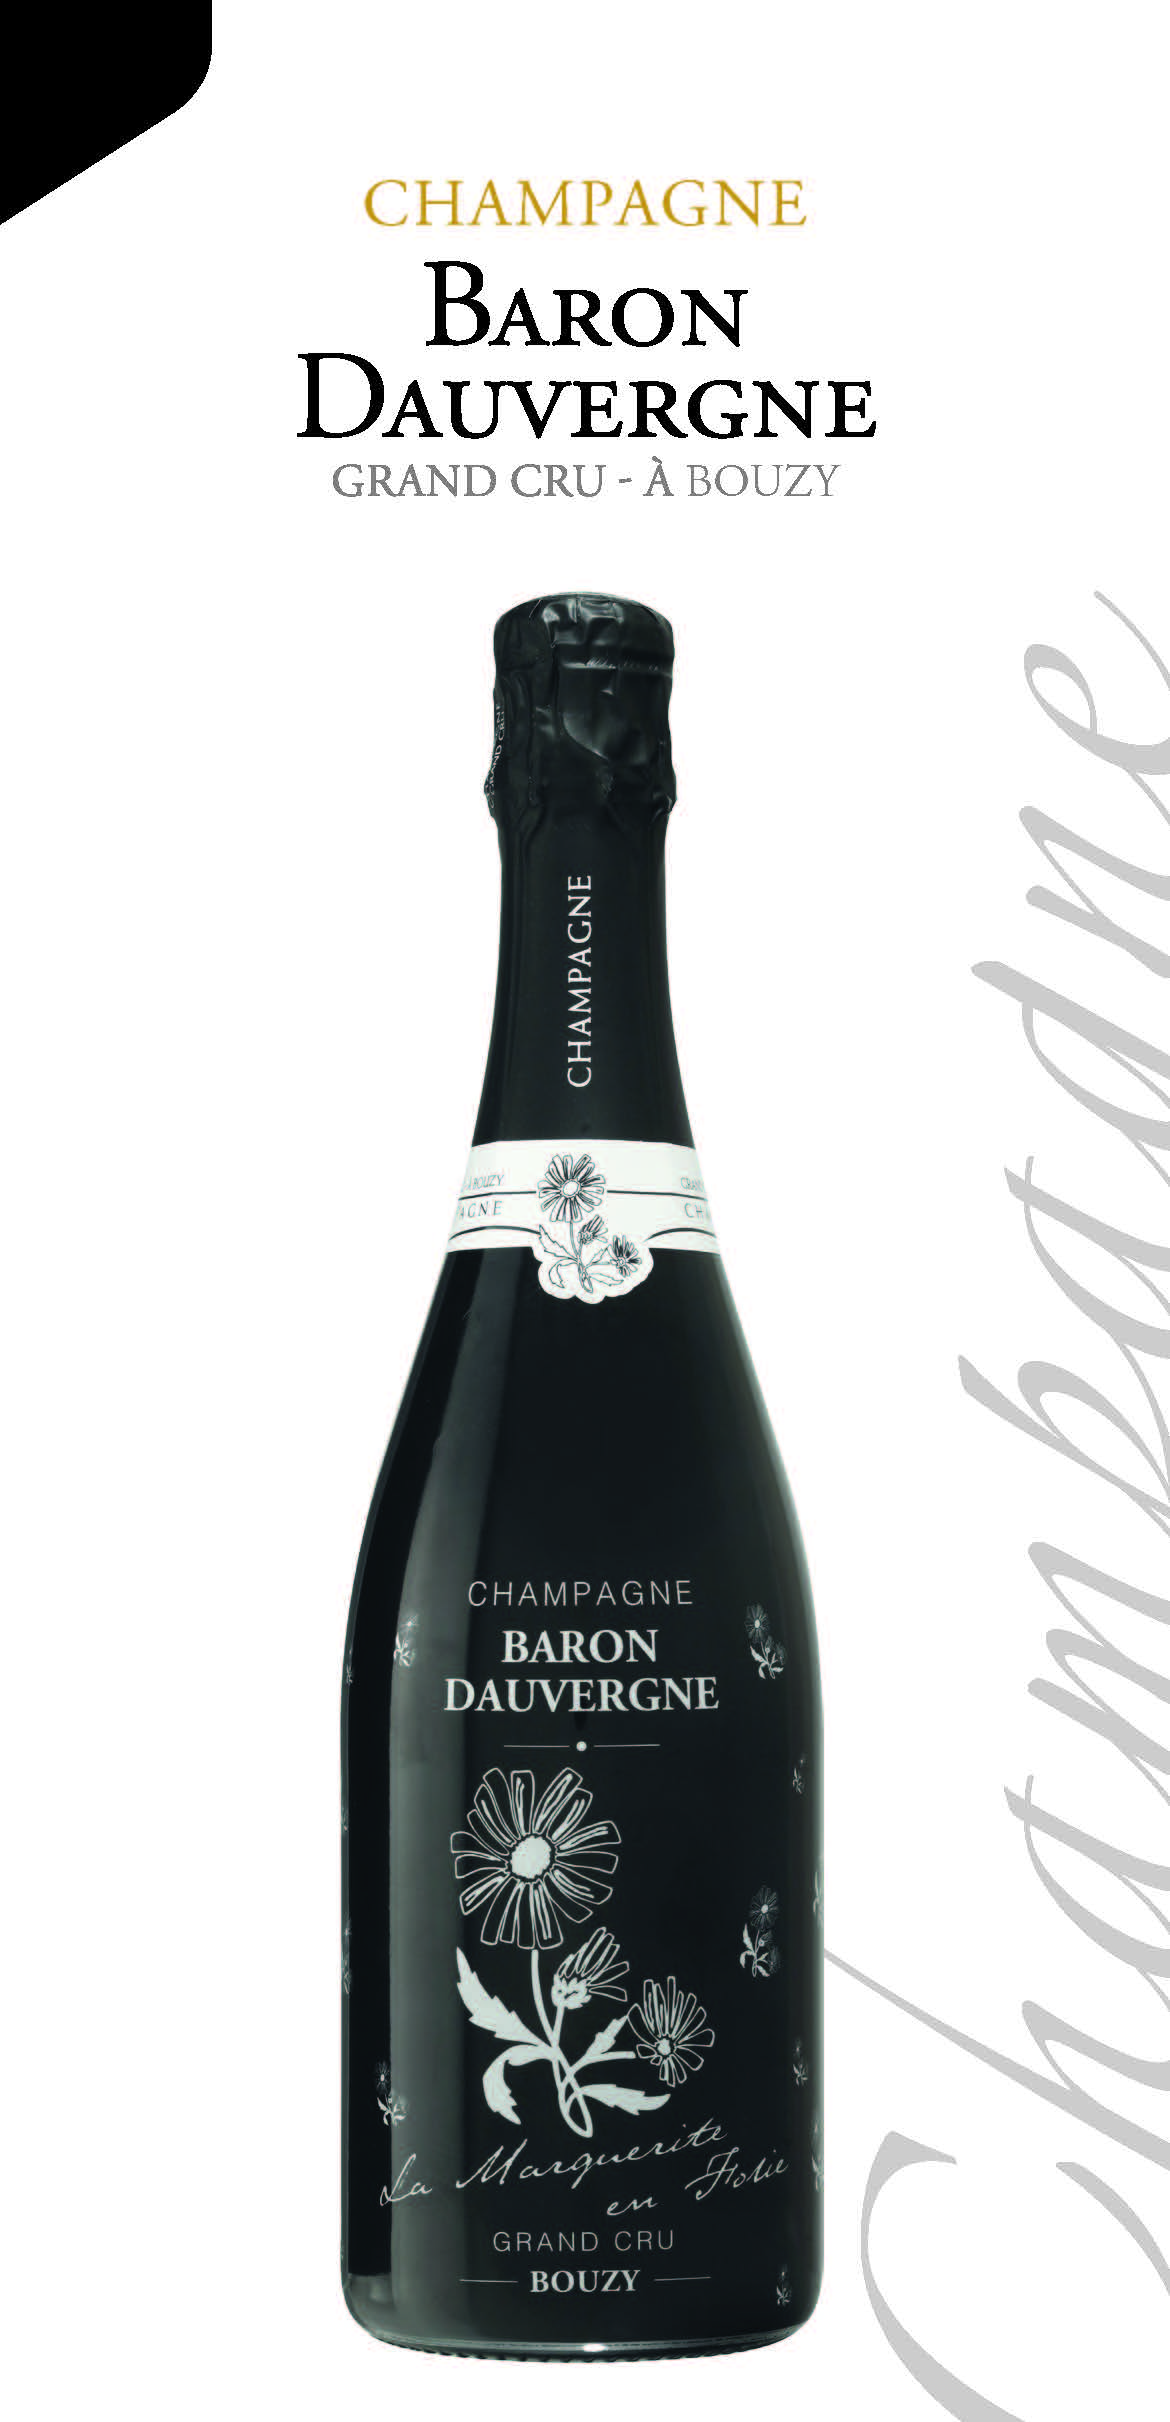 Marguerite en Folie - Champagne Baron DauvergneChampagne Baron Dauvergne